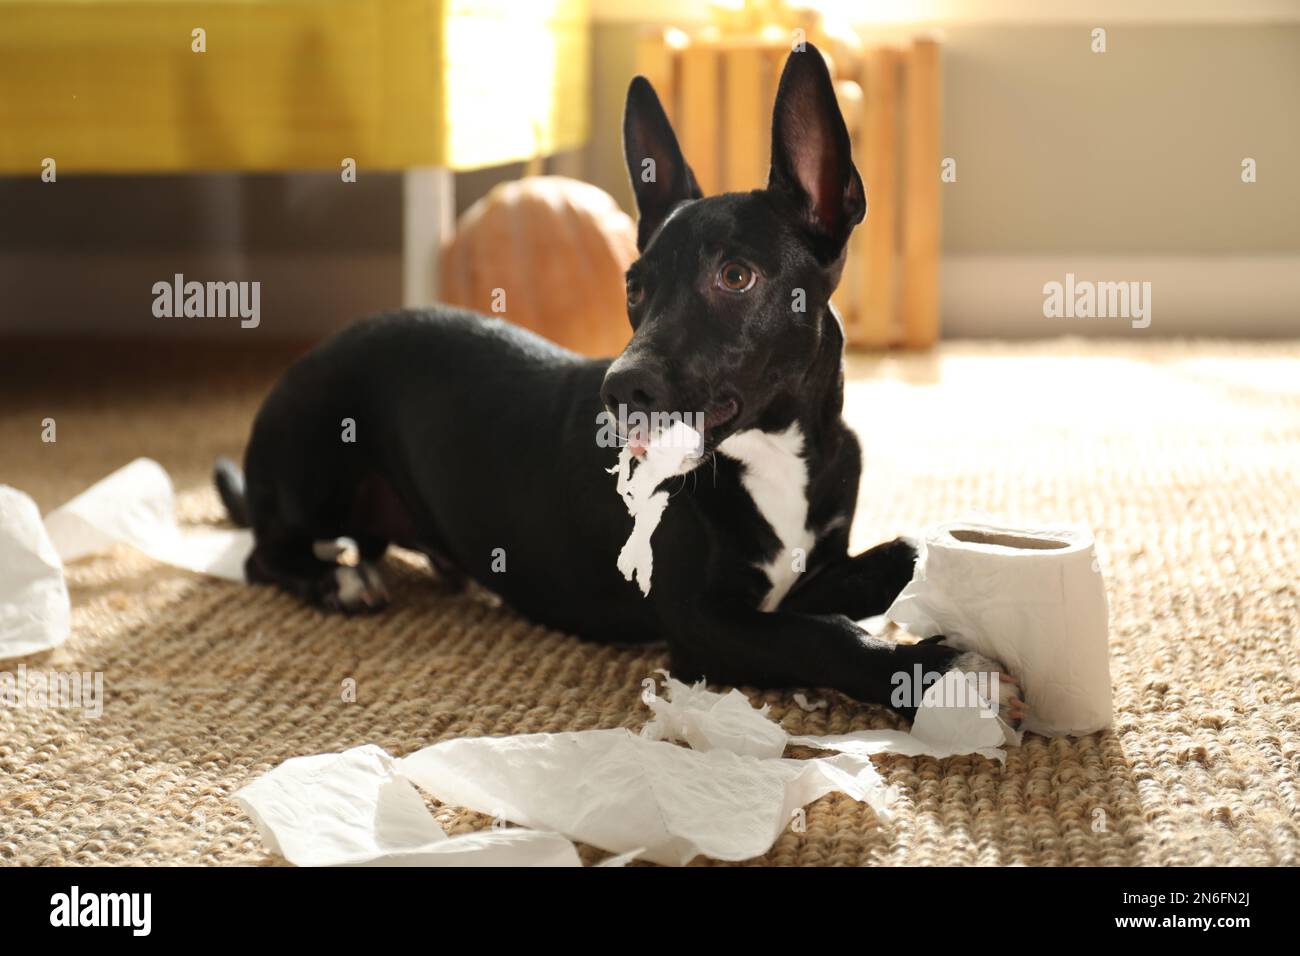 Joli chien noir avec papier toilette sur le sol à l'intérieur. Fête d'Halloween Banque D'Images